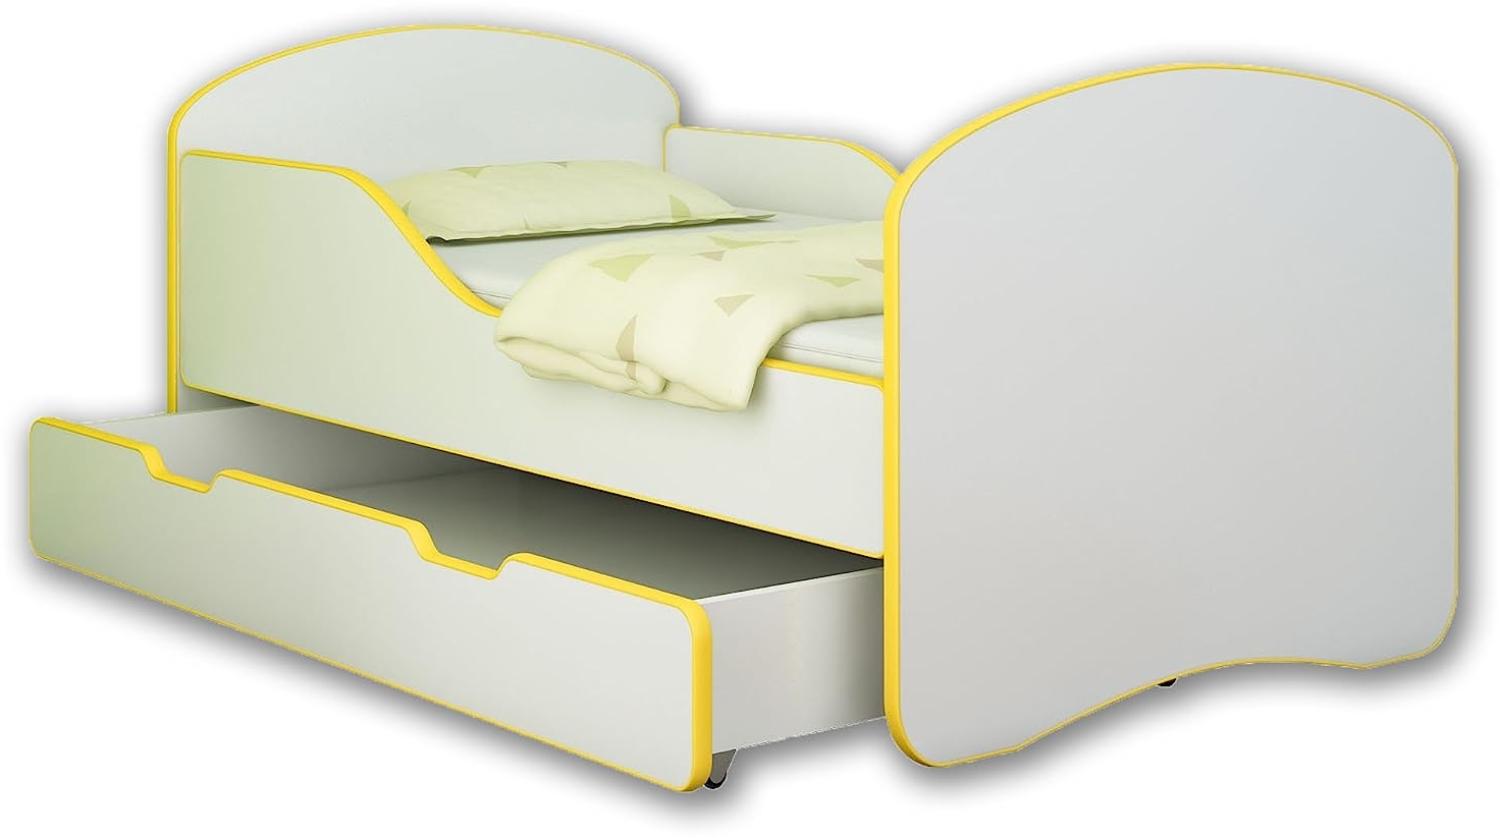 ACMA Jugendbett Kinderbett mit Einer Schublade und Matratze Weiß I 140 160 180 (180x80 cm + Drawer, Gelb) Bild 1